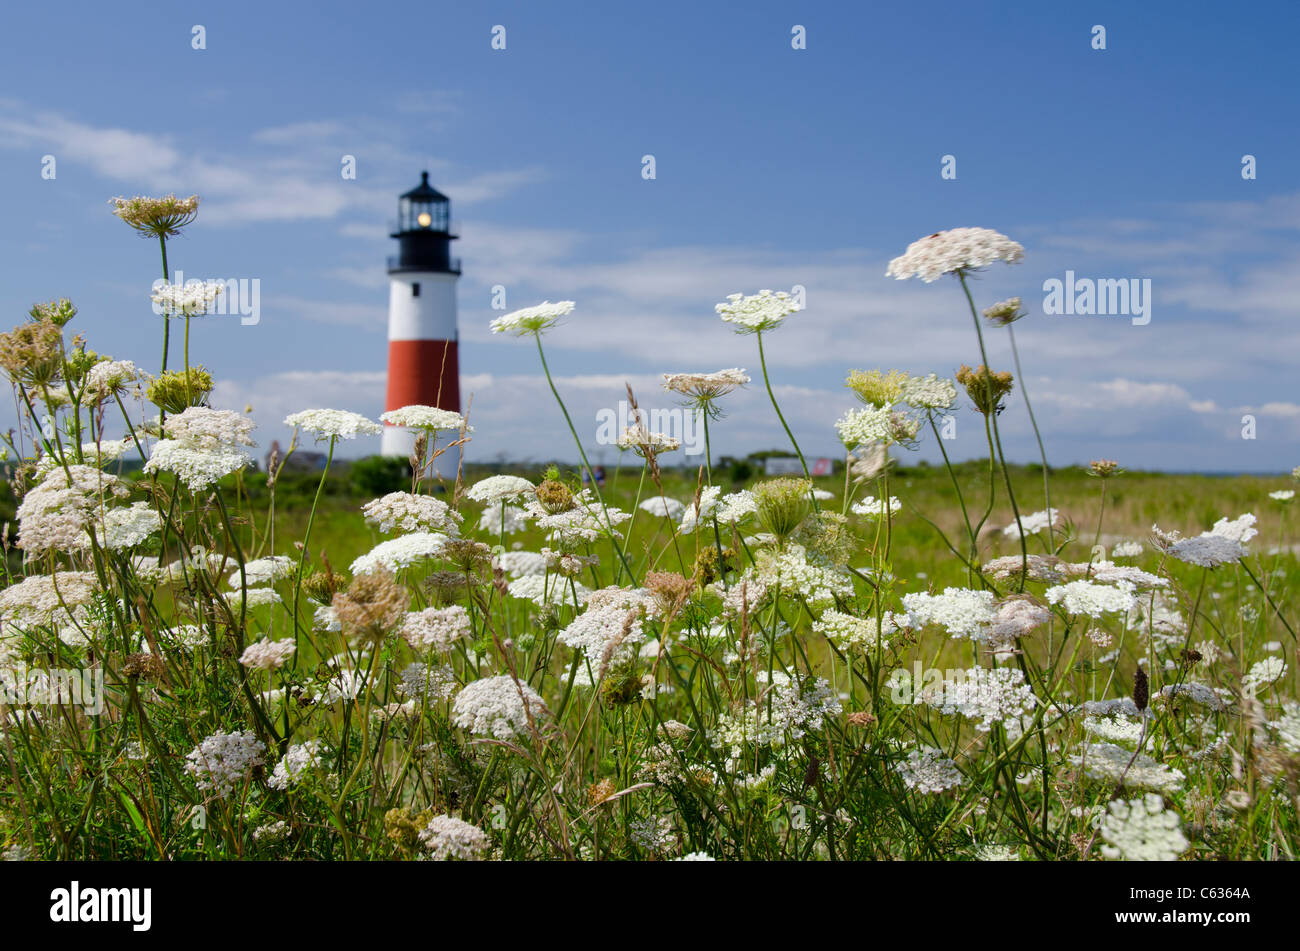 Massachusetts, Nantucket. Sankaty Head, Sankaty lighthouse, est. 1850. Stock Photo